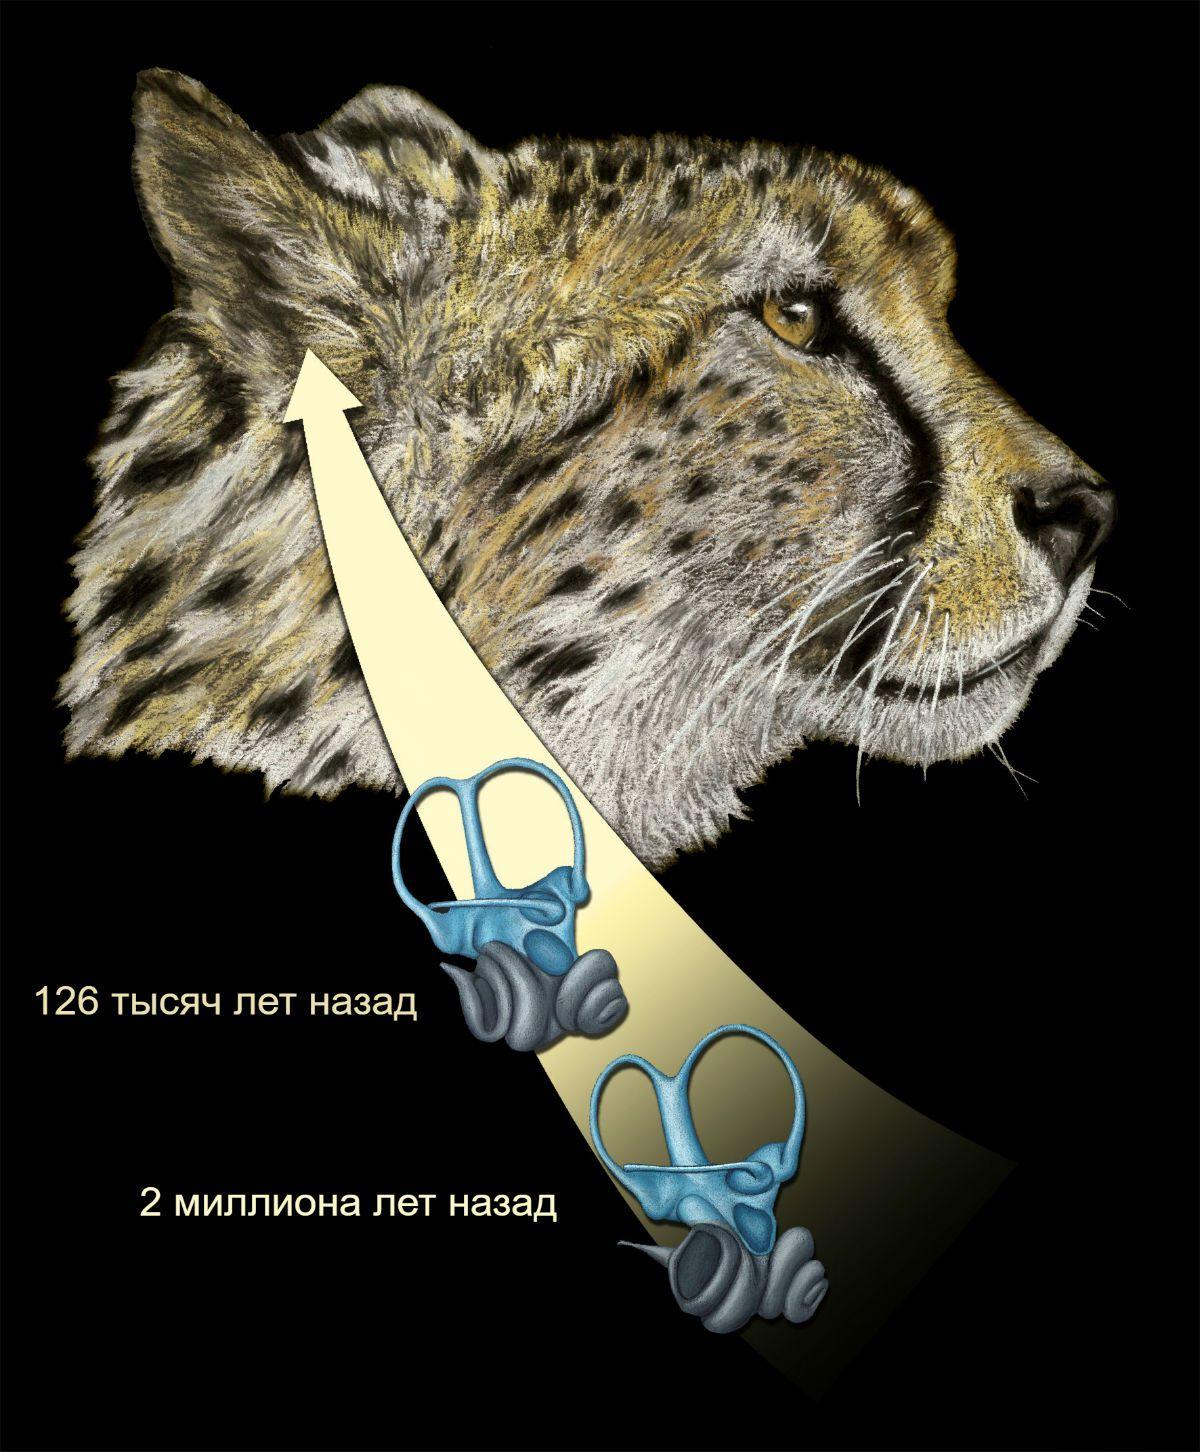 Залог успешной охоты гепарда кроется в его уникальном внутреннем ухе